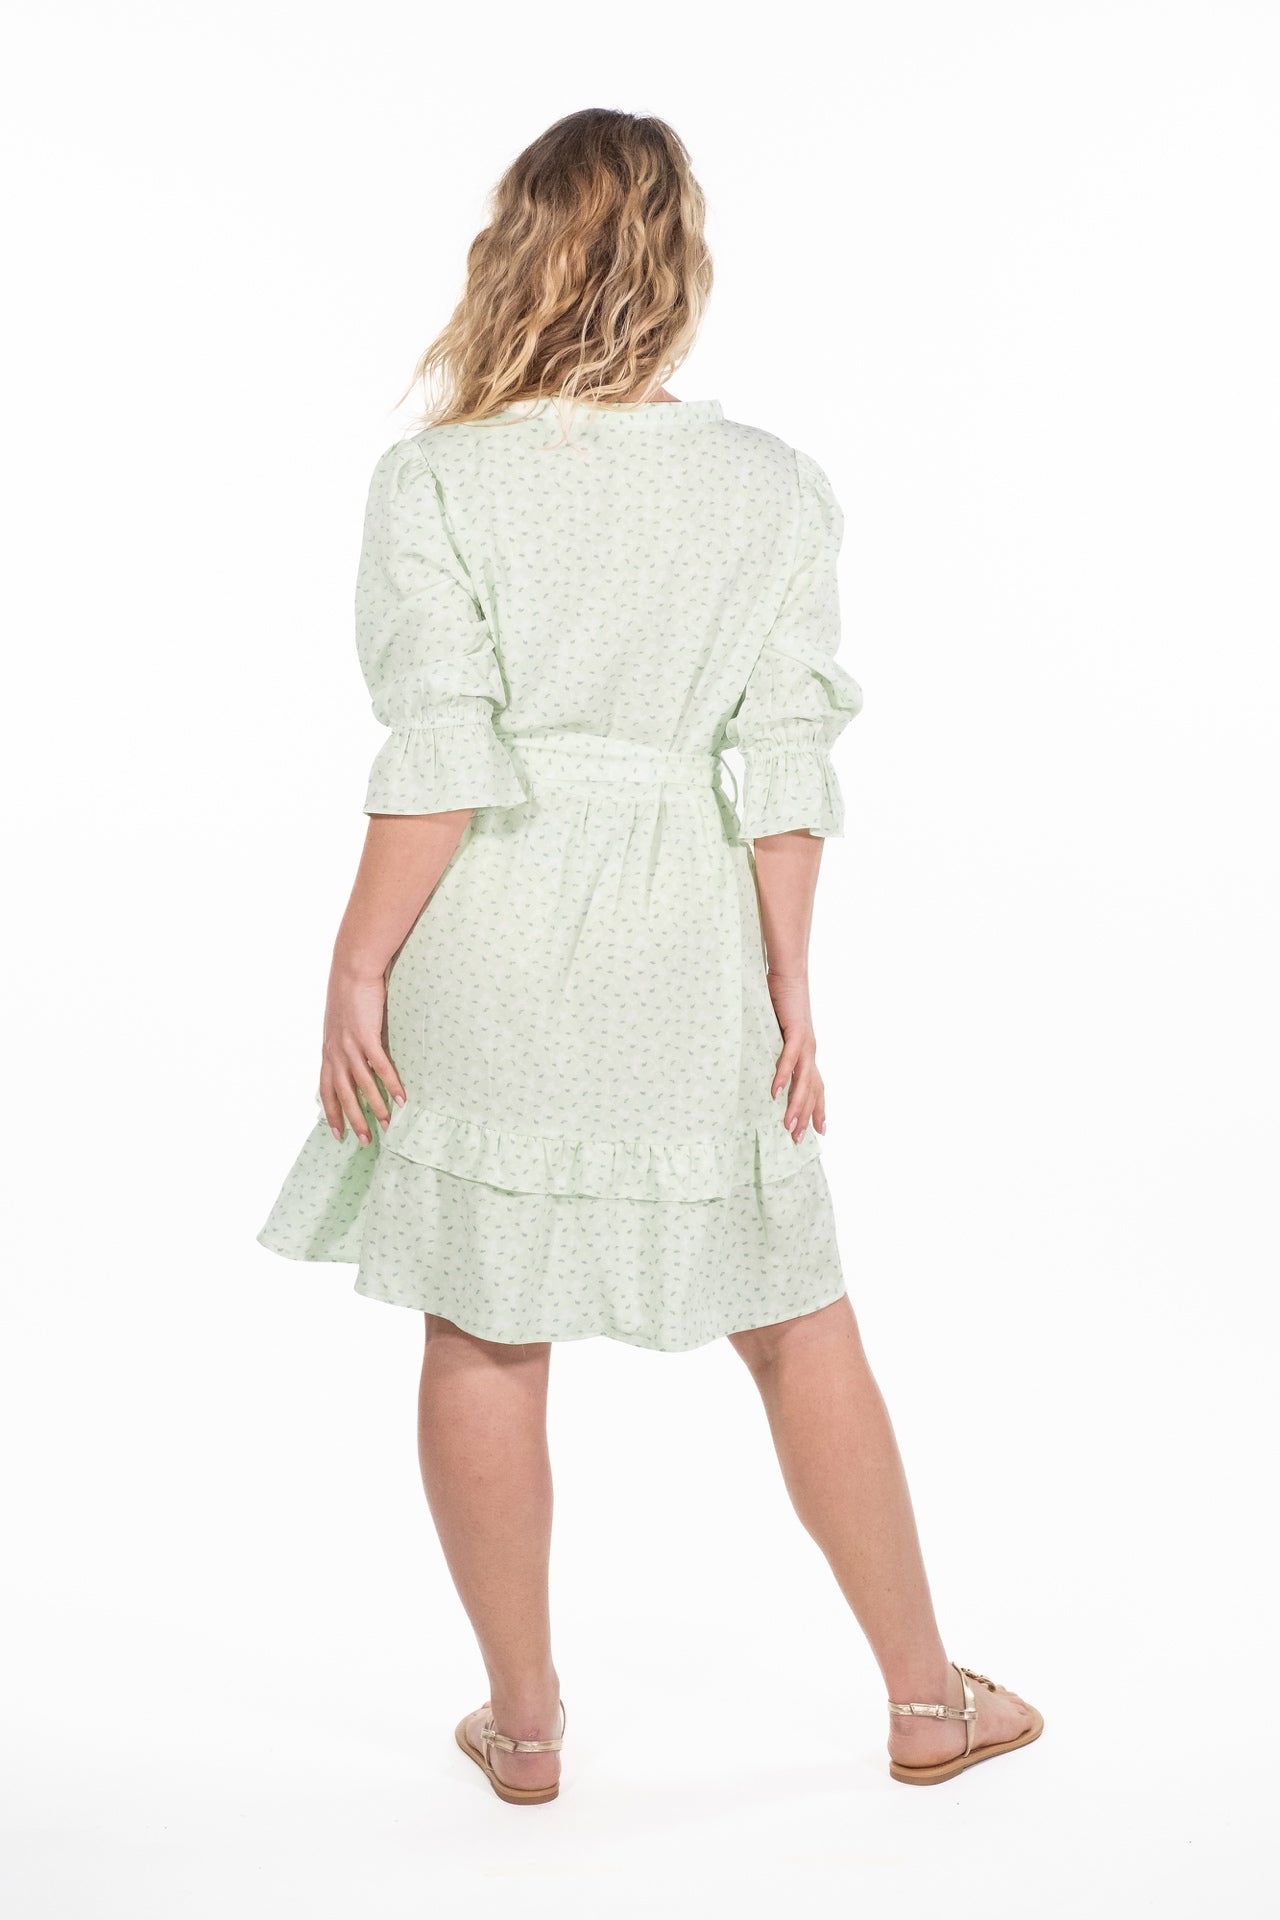 Olivia Green Print Ruffle Dress - Rupert and Buckley - Dress